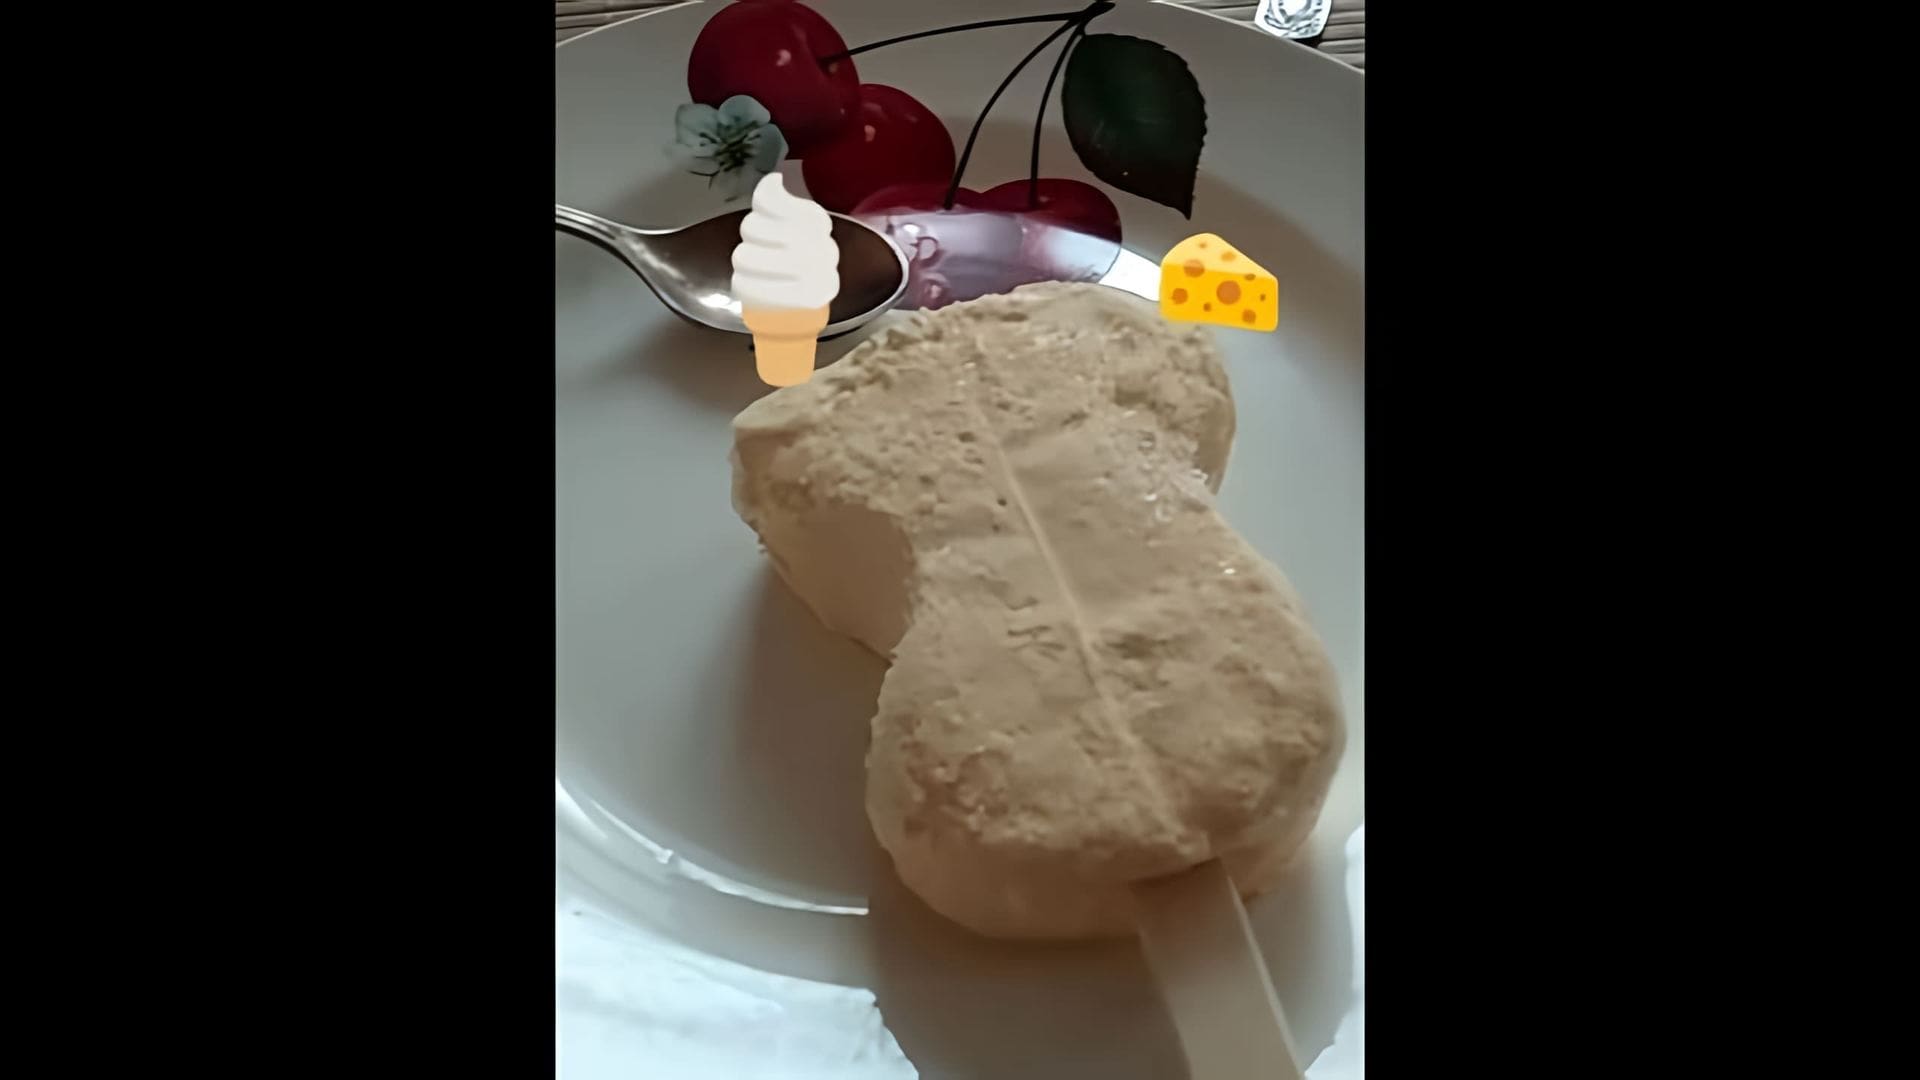 В этом видео демонстрируется сырное мороженое, которое выглядит очень аппетитно